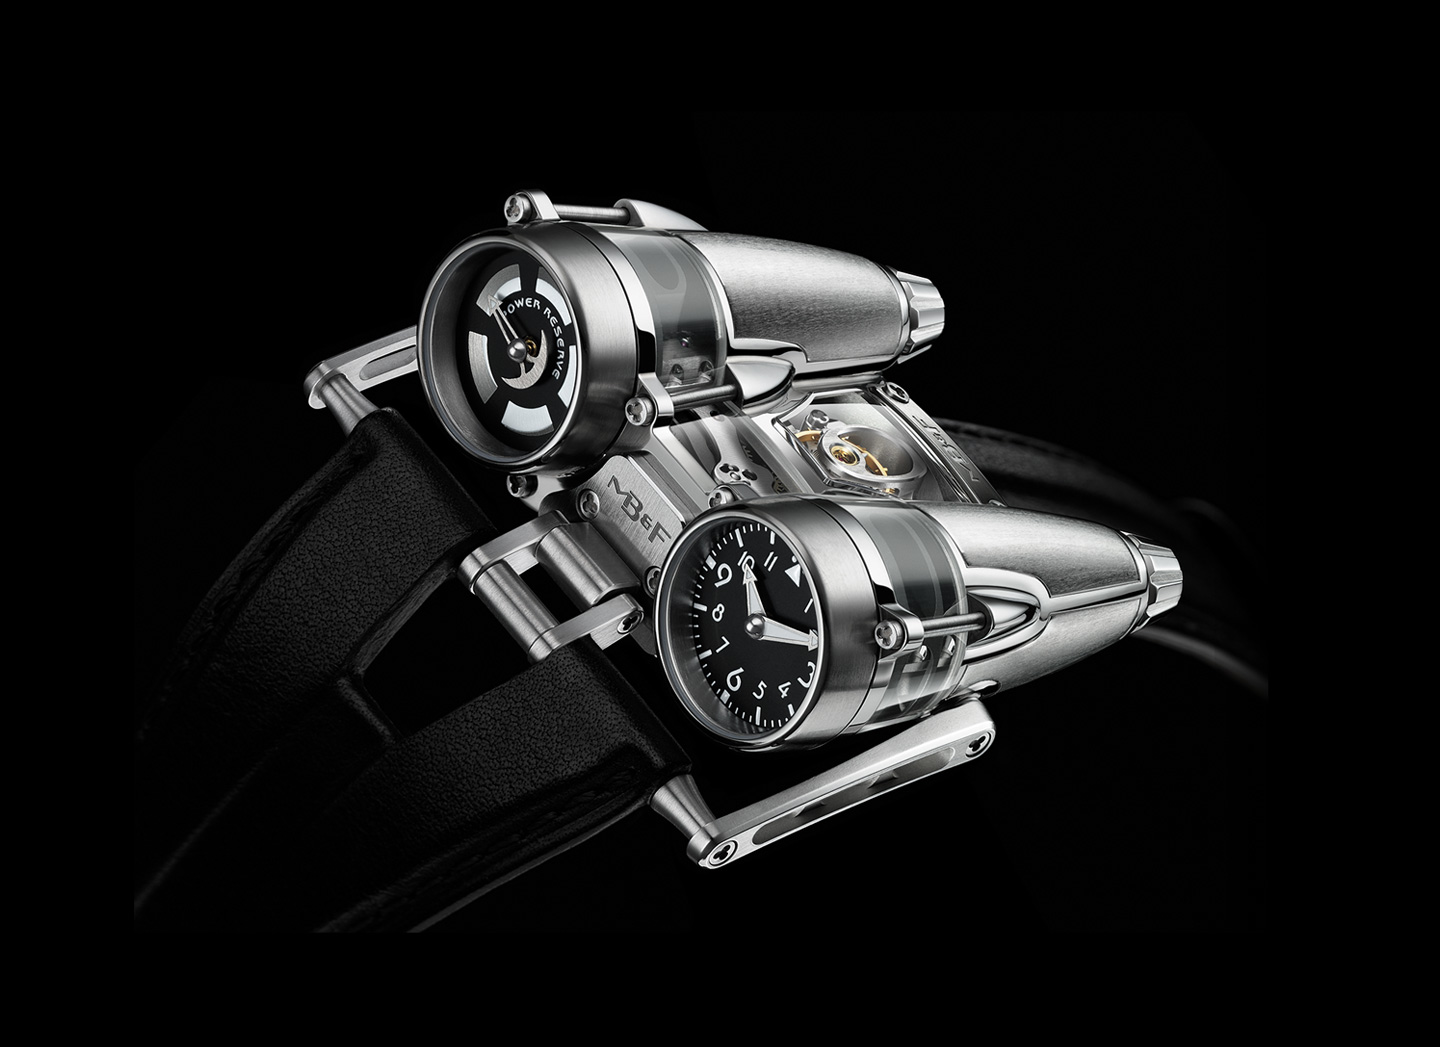 MB&F HM4 Thunderbolt Watch, High-tech Watches, Silver Watch, Modern Watch